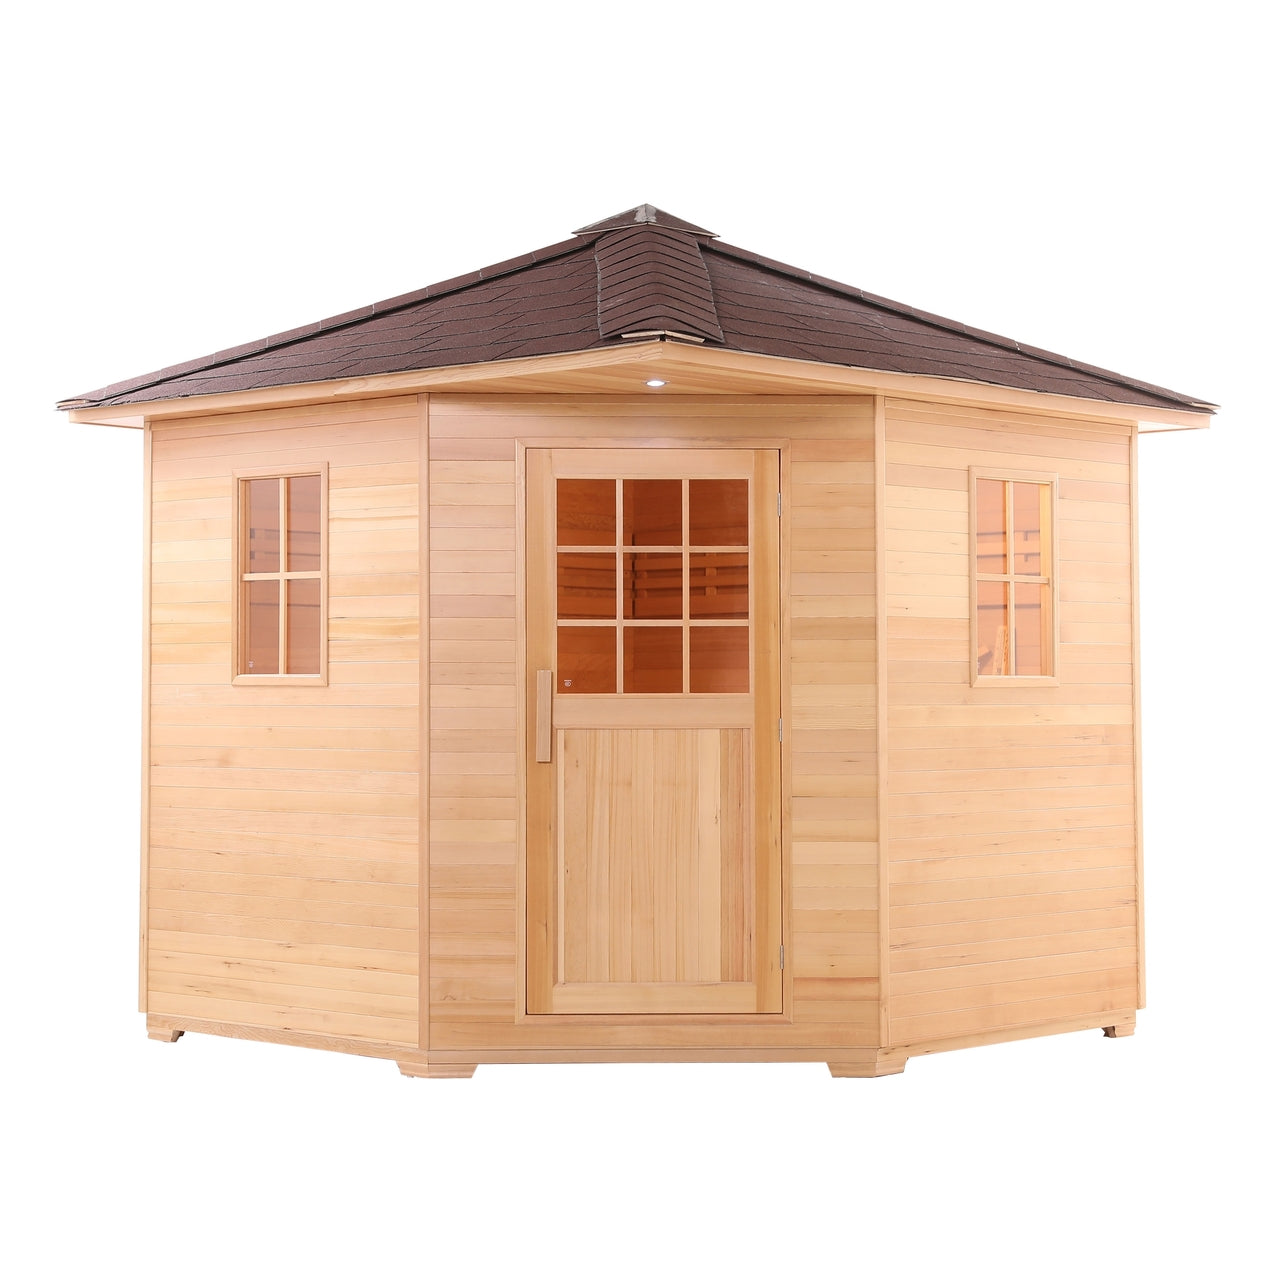 Aleko Canadian Hemlock Wet Dry Outdoor Sauna with Asphalt Roof - 6 kW ETL Certified Heater - 5 Person